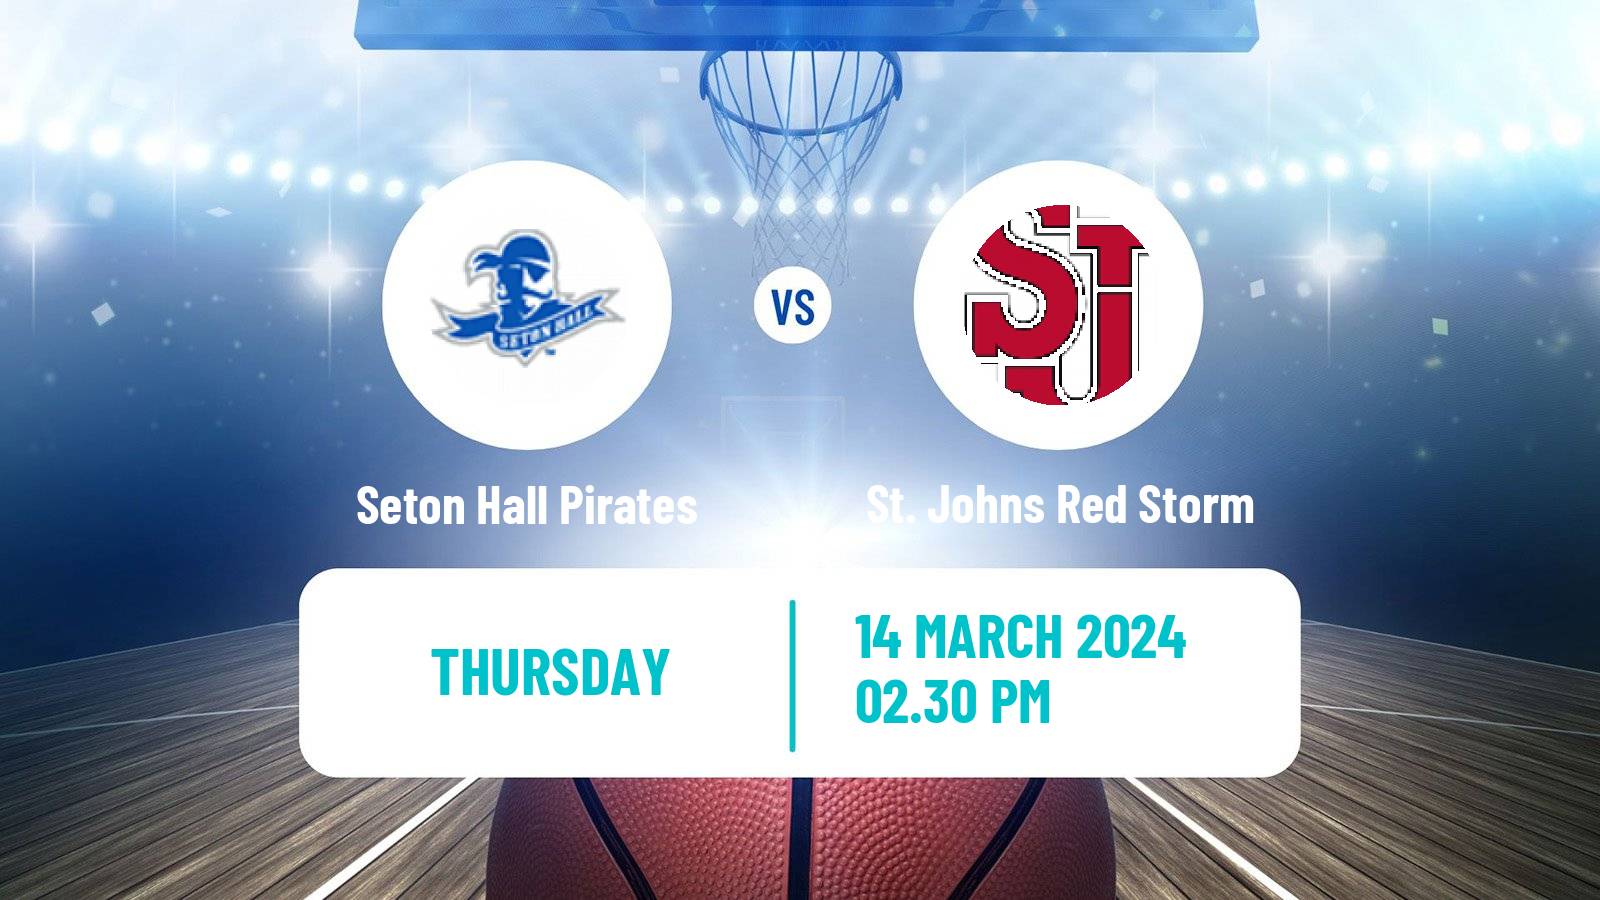 Basketball NCAA College Basketball Seton Hall Pirates - St. Johns Red Storm